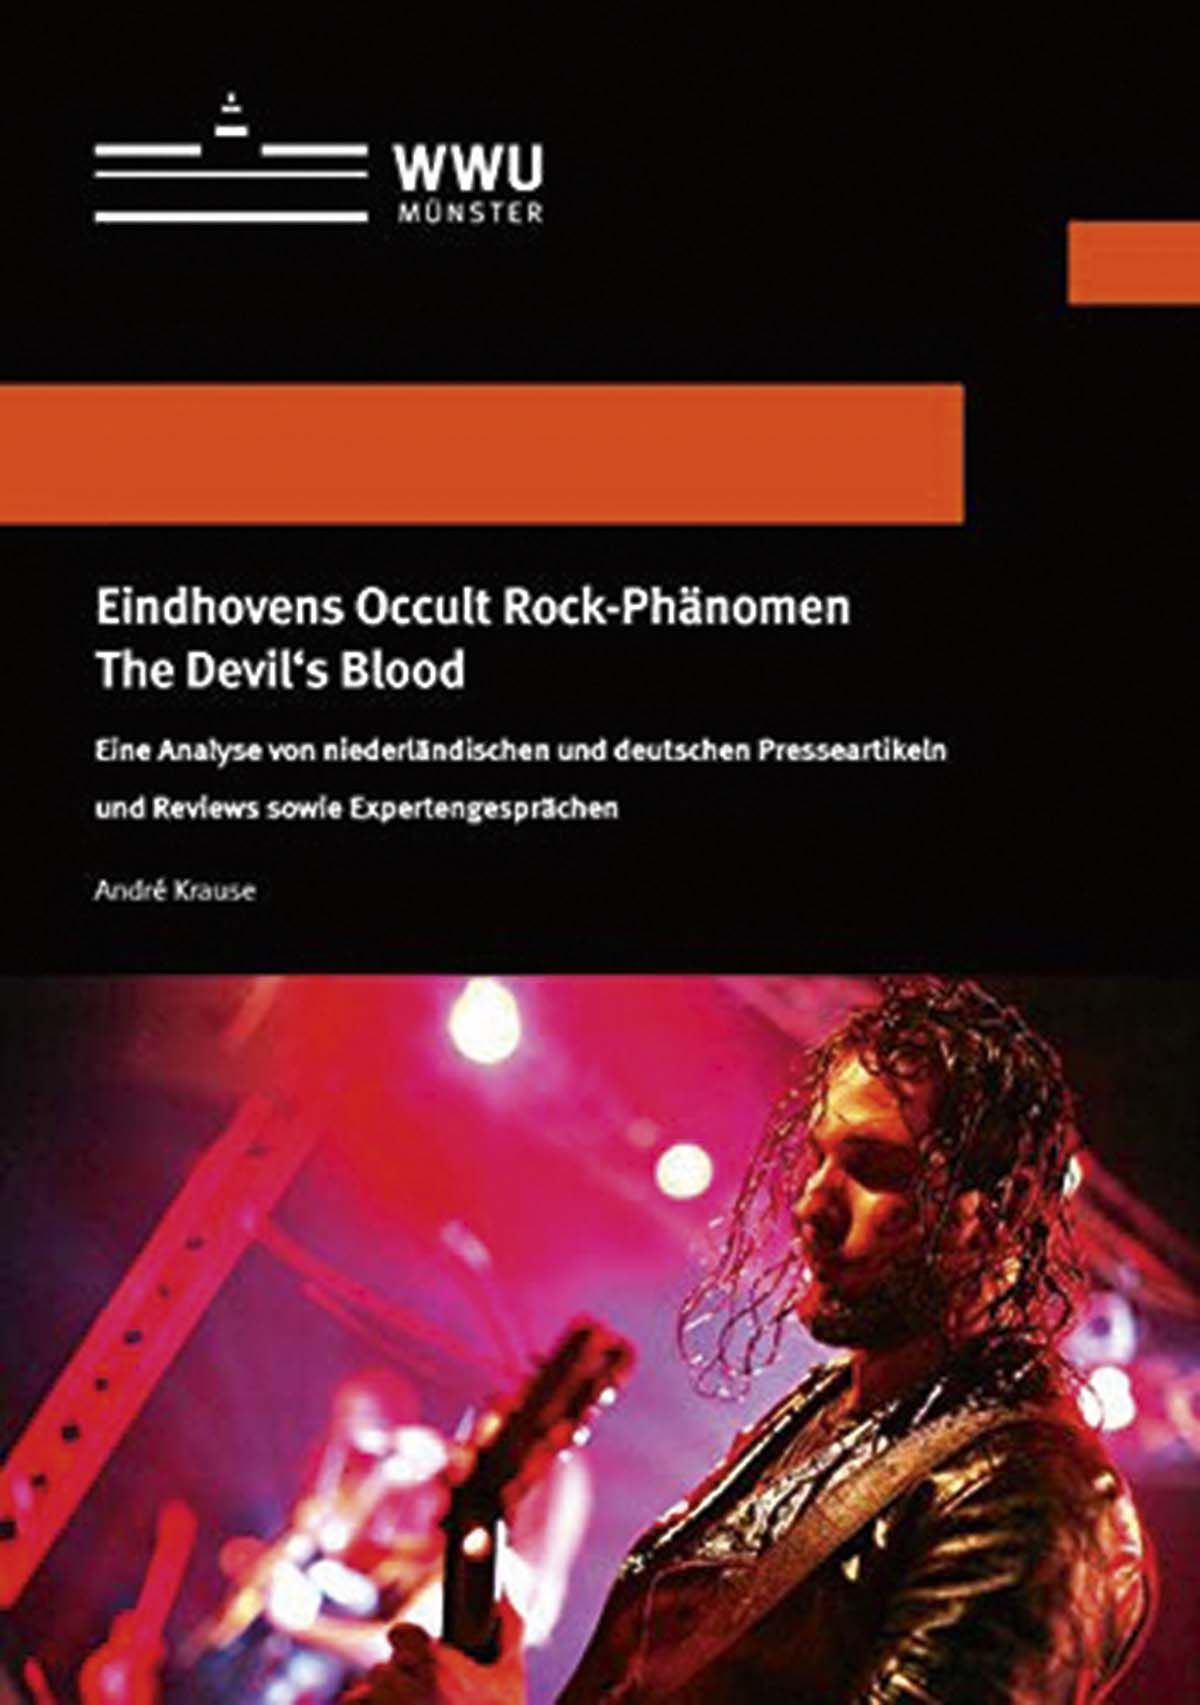 The Devils Blood - Eindhoven Occult Rock-Phänomen The Devil´s Blood - Eine Analyse von niederländischen und deutschen Presseartikeln und Reviews sowie Expertengesprächen